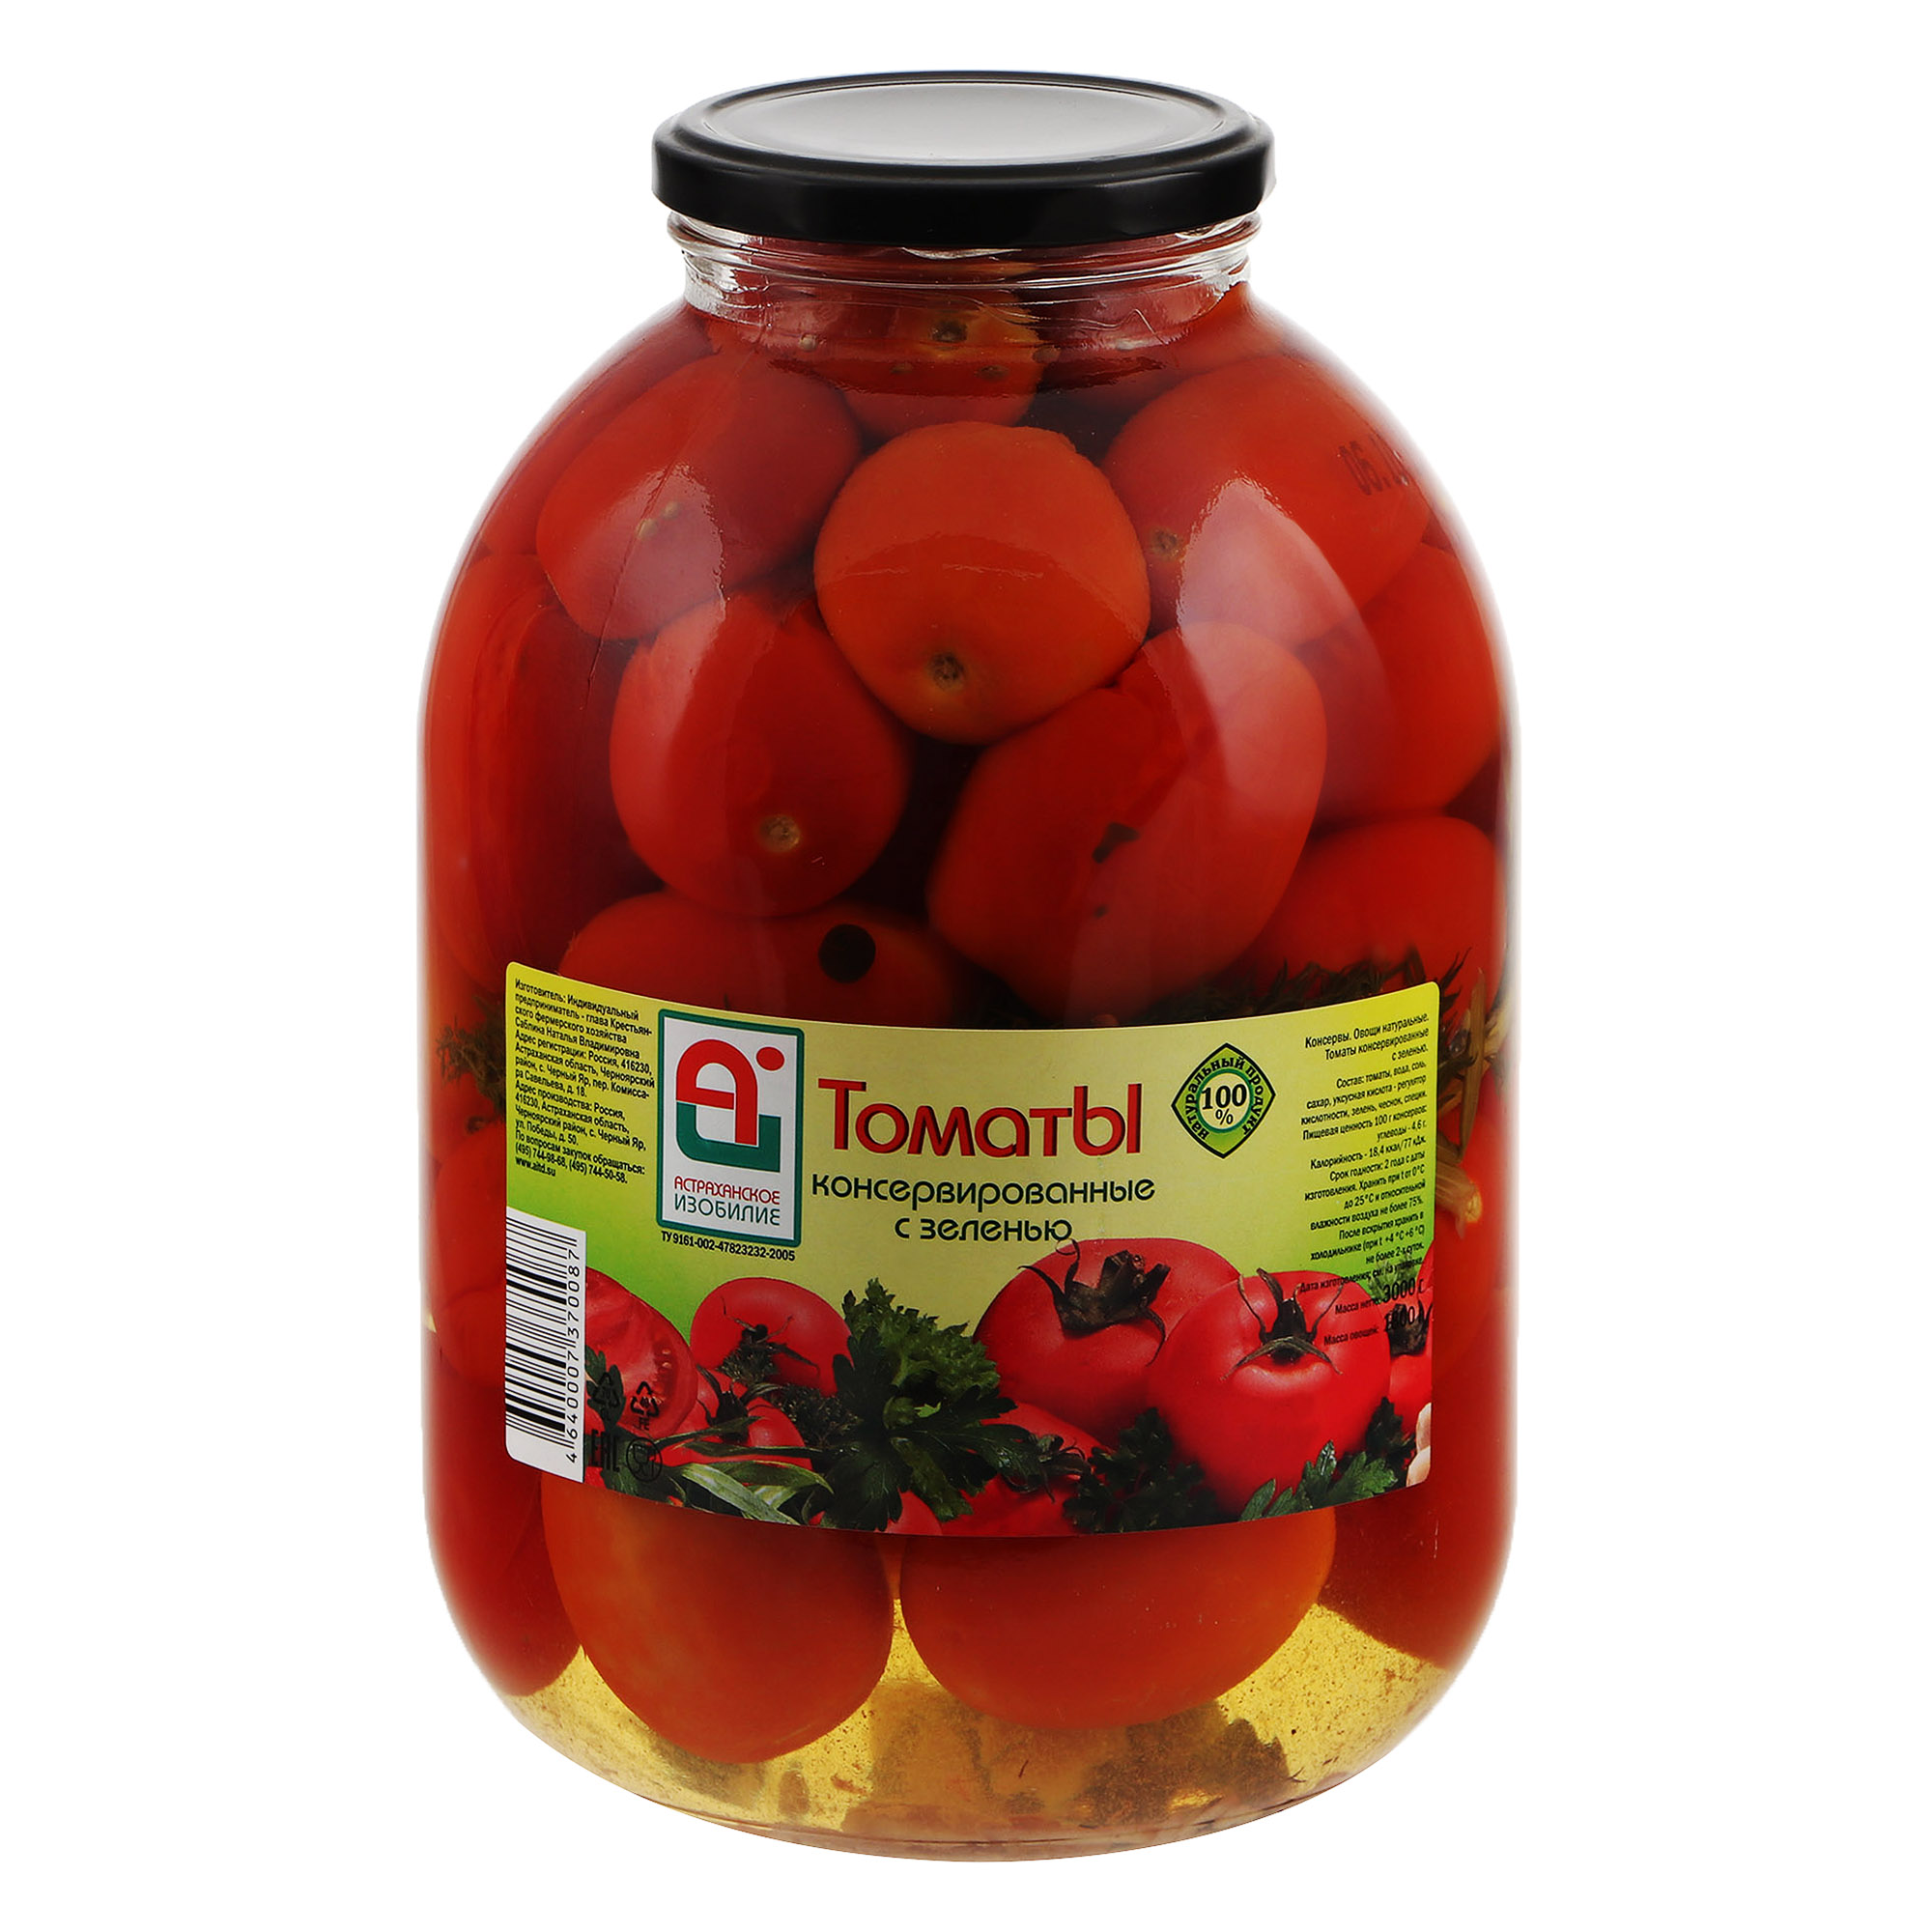 Томаты консервированные Астраханское Изобилие 3 л томаты астраханское изобилие в мякоти 950 г